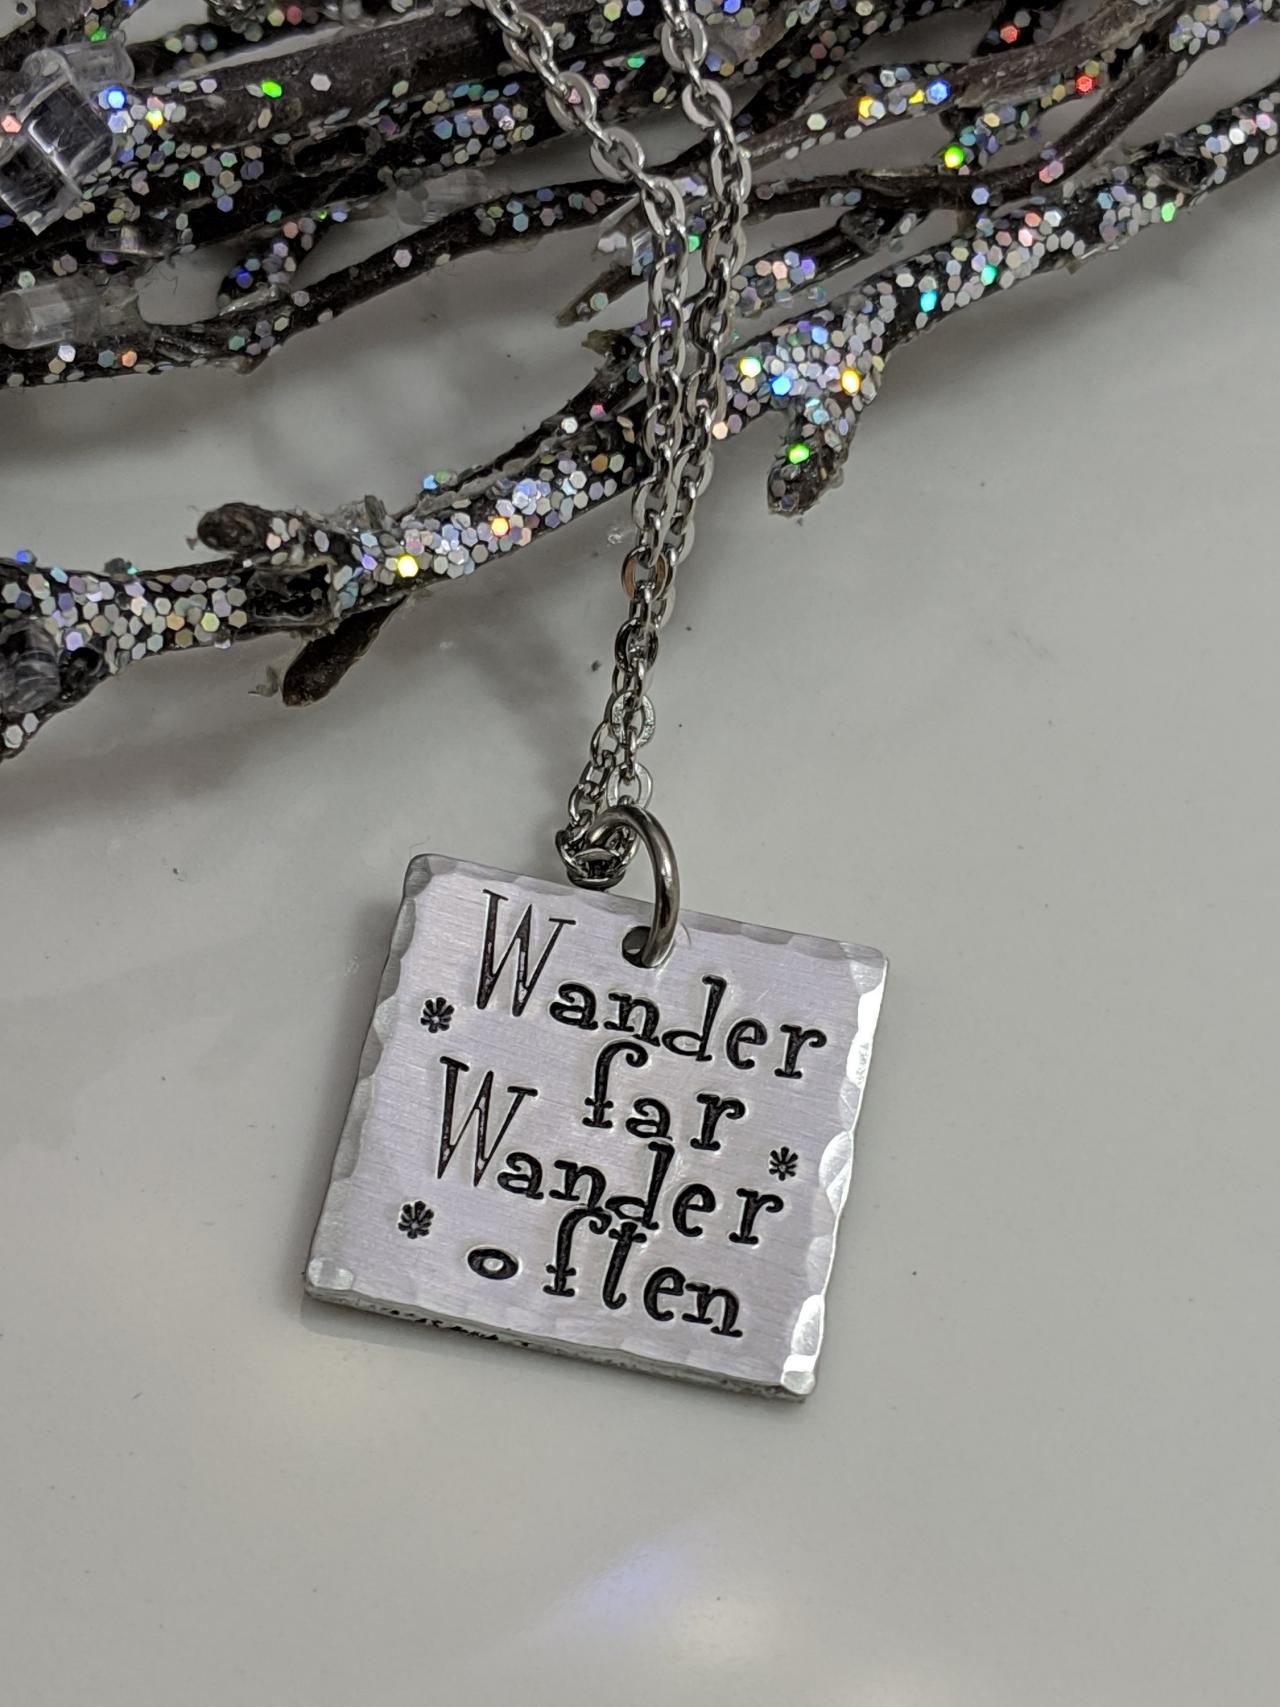 Wander Far Wander Often - Travel Jewelry - Wander Necklace - Adventure - Wanderlust - Journey